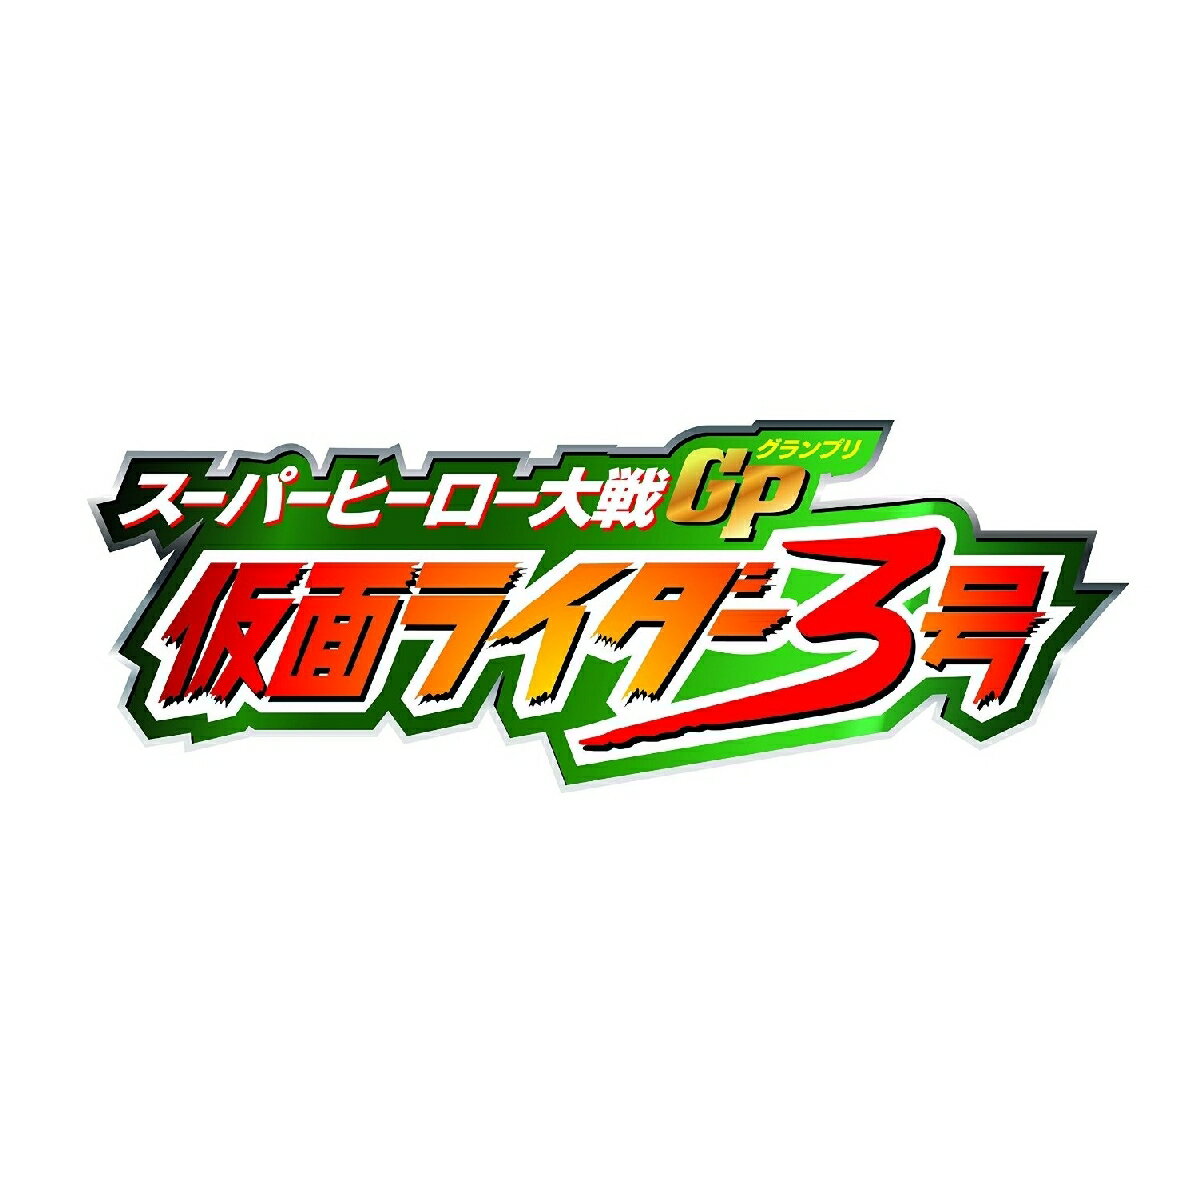 スーパーヒーロー大戦GP 仮面ライダー3号 コレクターズパック